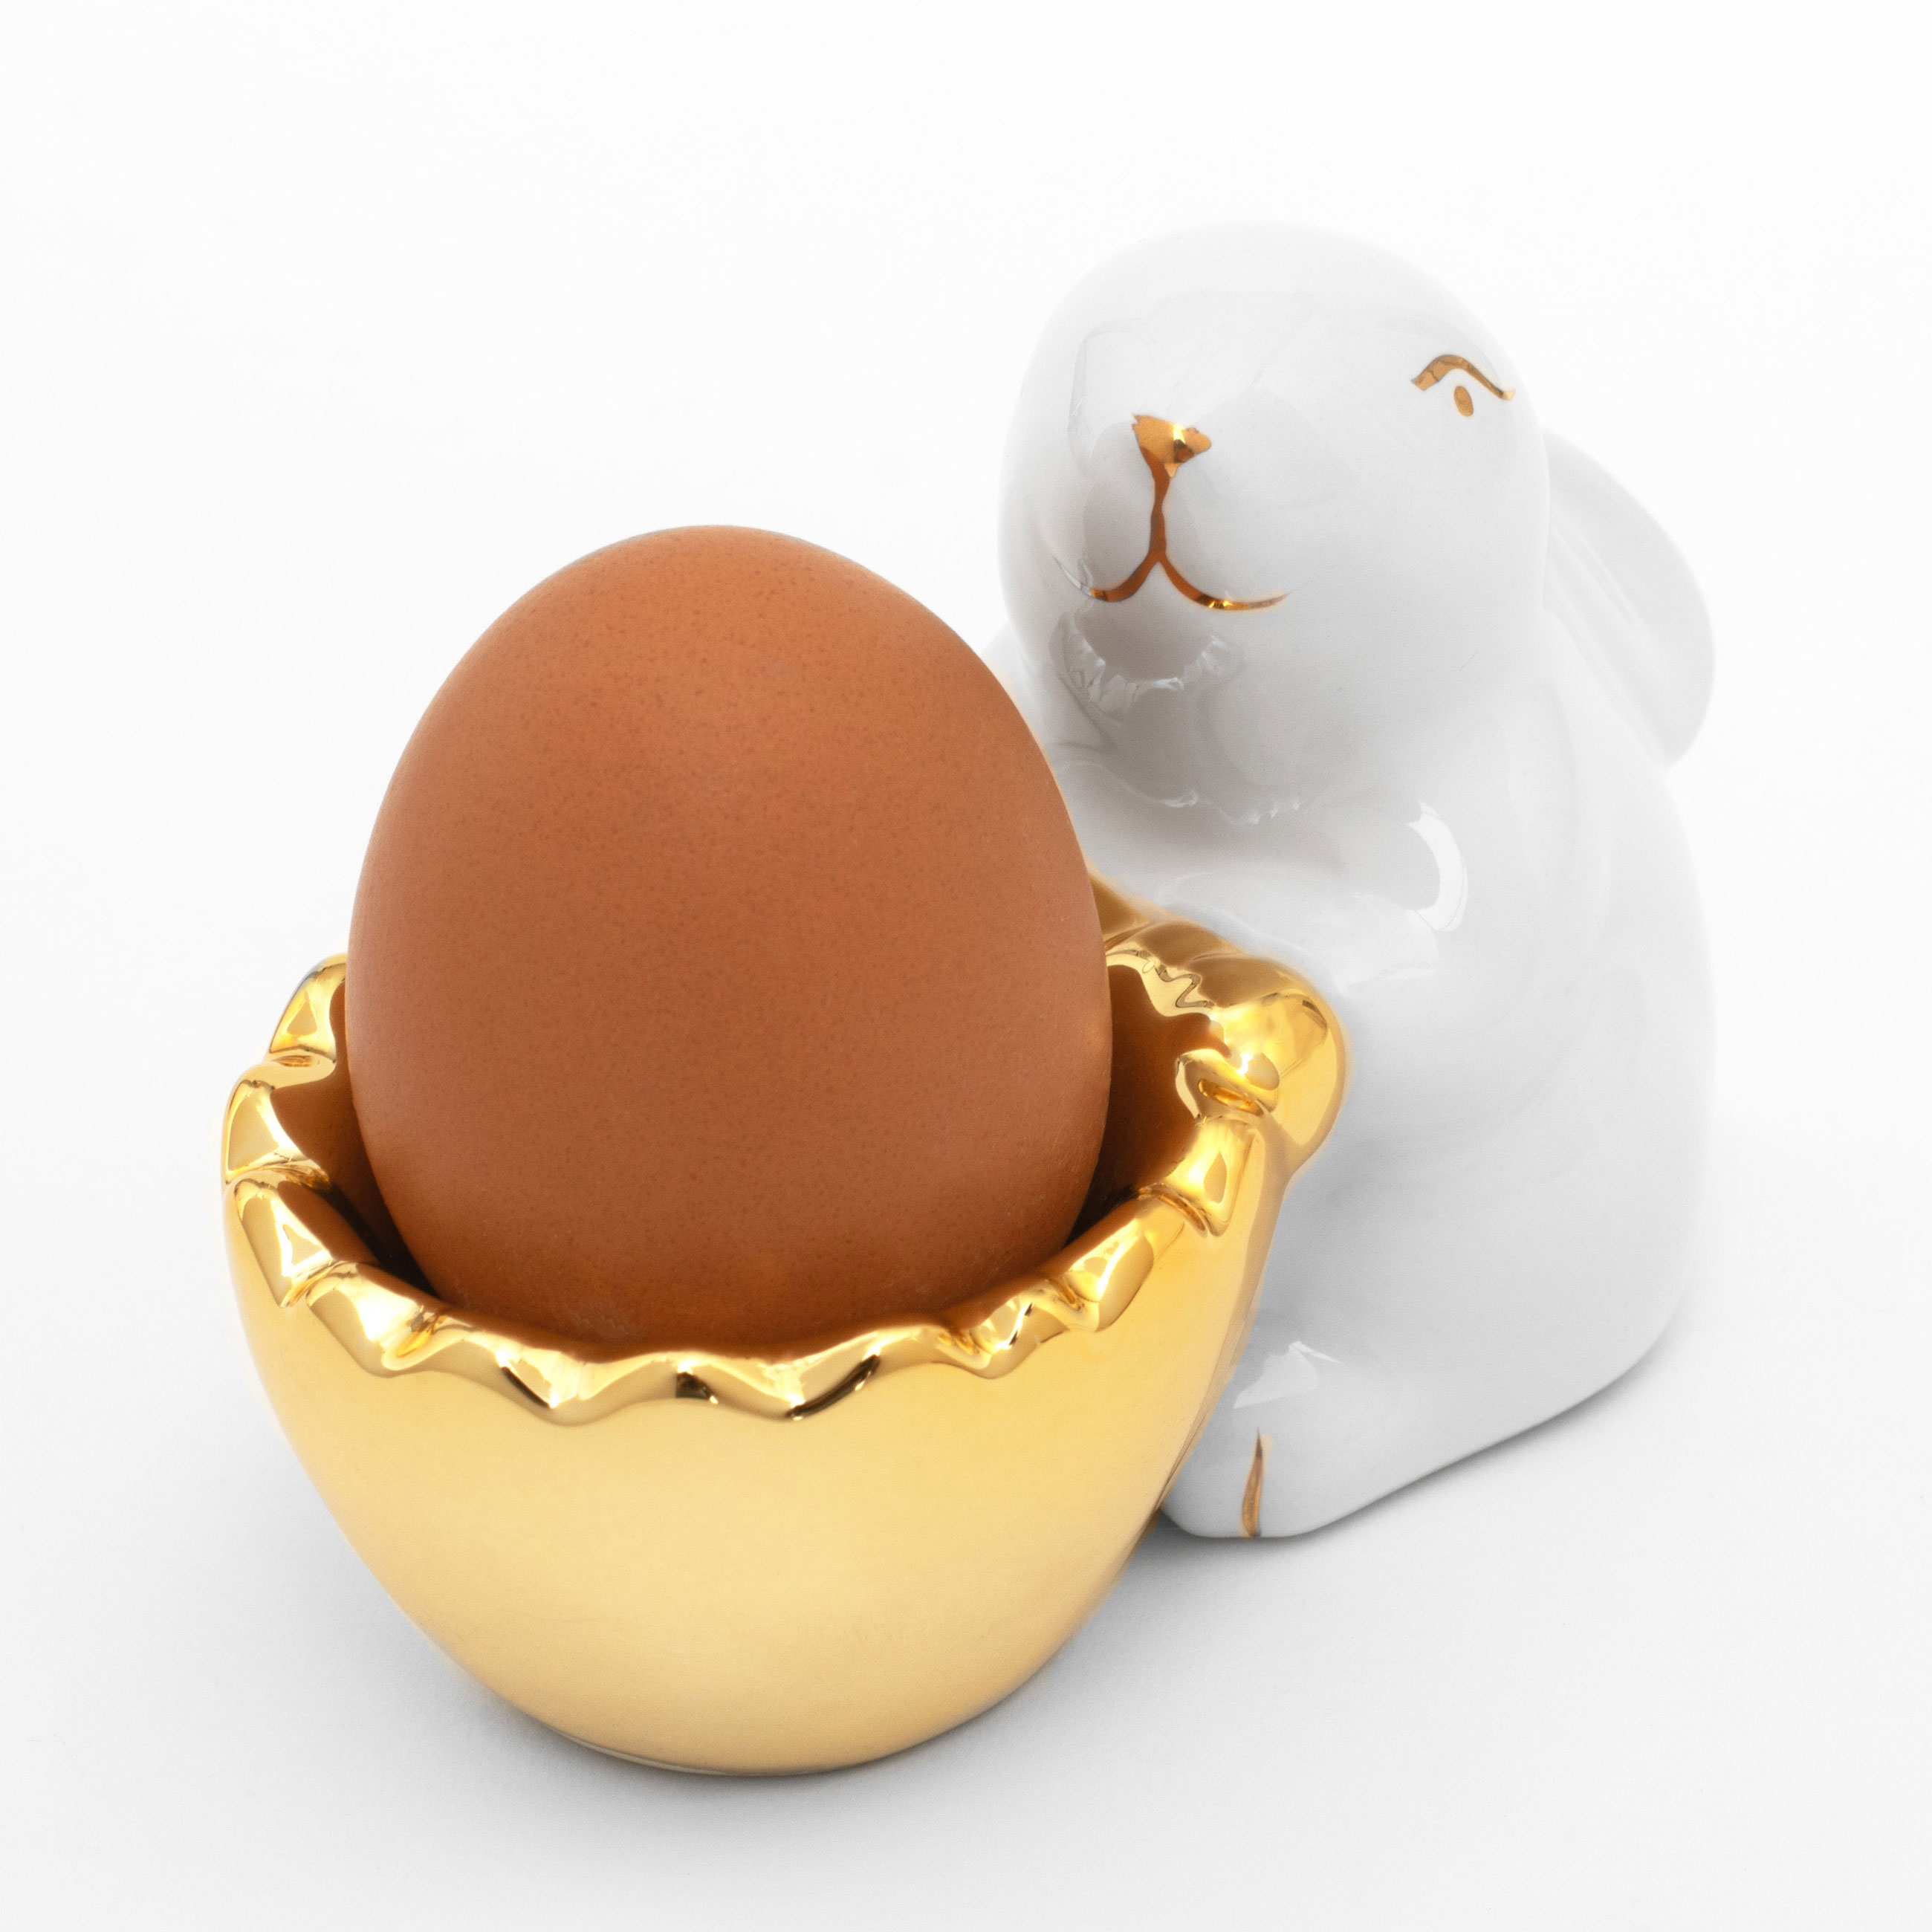 Подставка для яйца, 11 см, керамика, бело-золотистая, Кролик со скорлупой, Easter gold изображение № 4